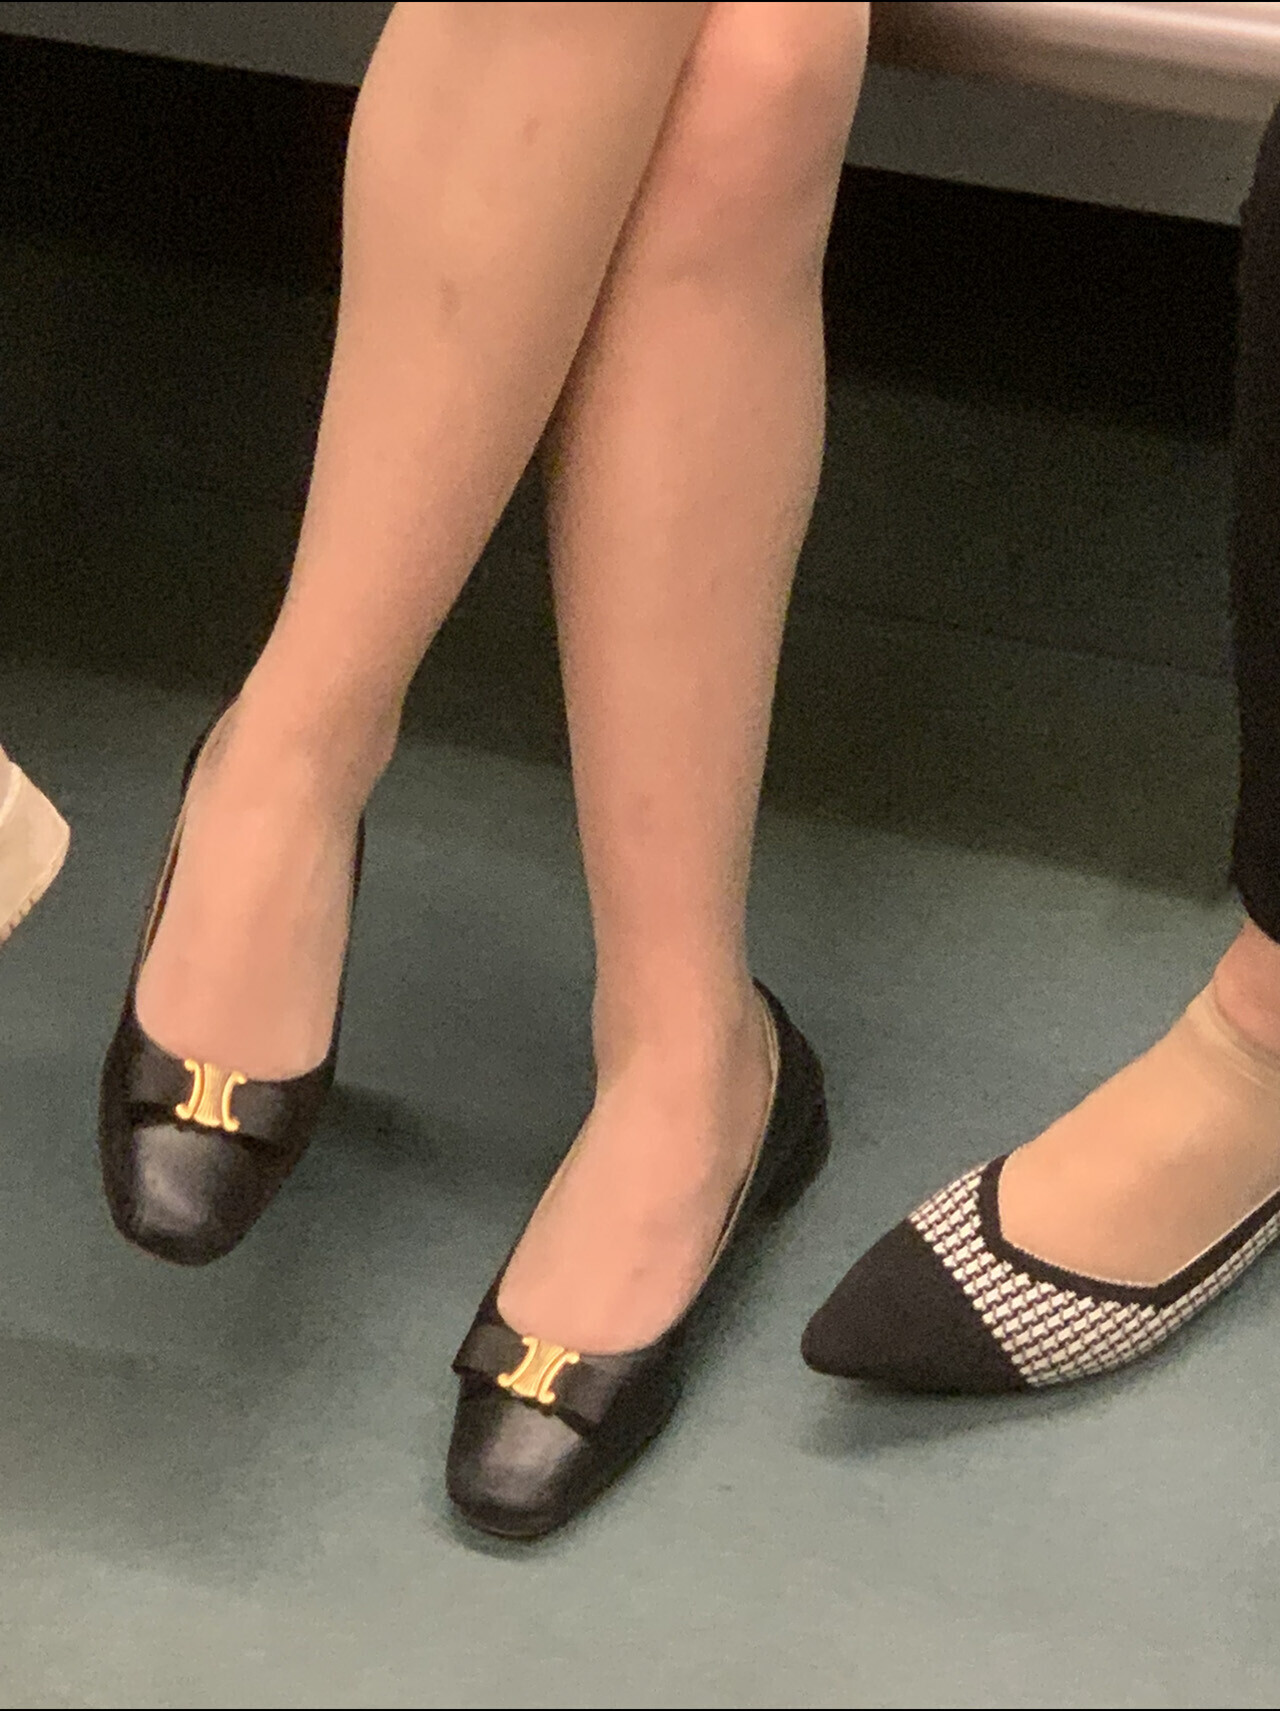 口罩年在地铁遇到的极品肉丝平底鞋妹子